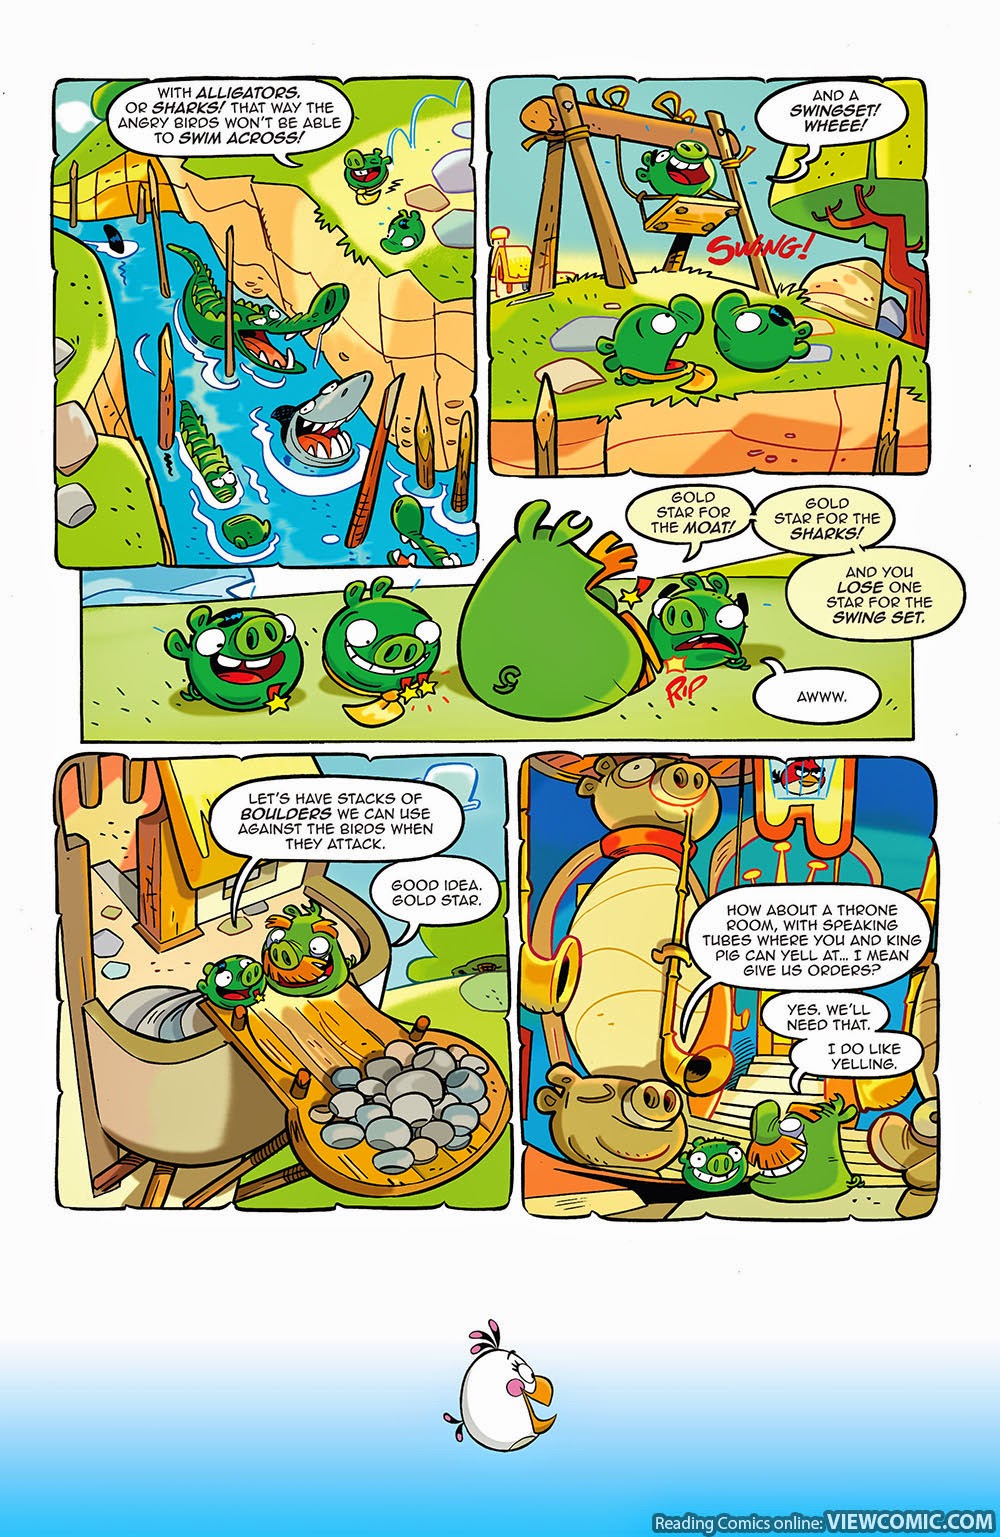 1000px x 1537px - Angry Birds Comics 010 (2015) â€¦â€¦â€¦â€¦.â€¦â€¦â€¦ | Viewcomic reading ...